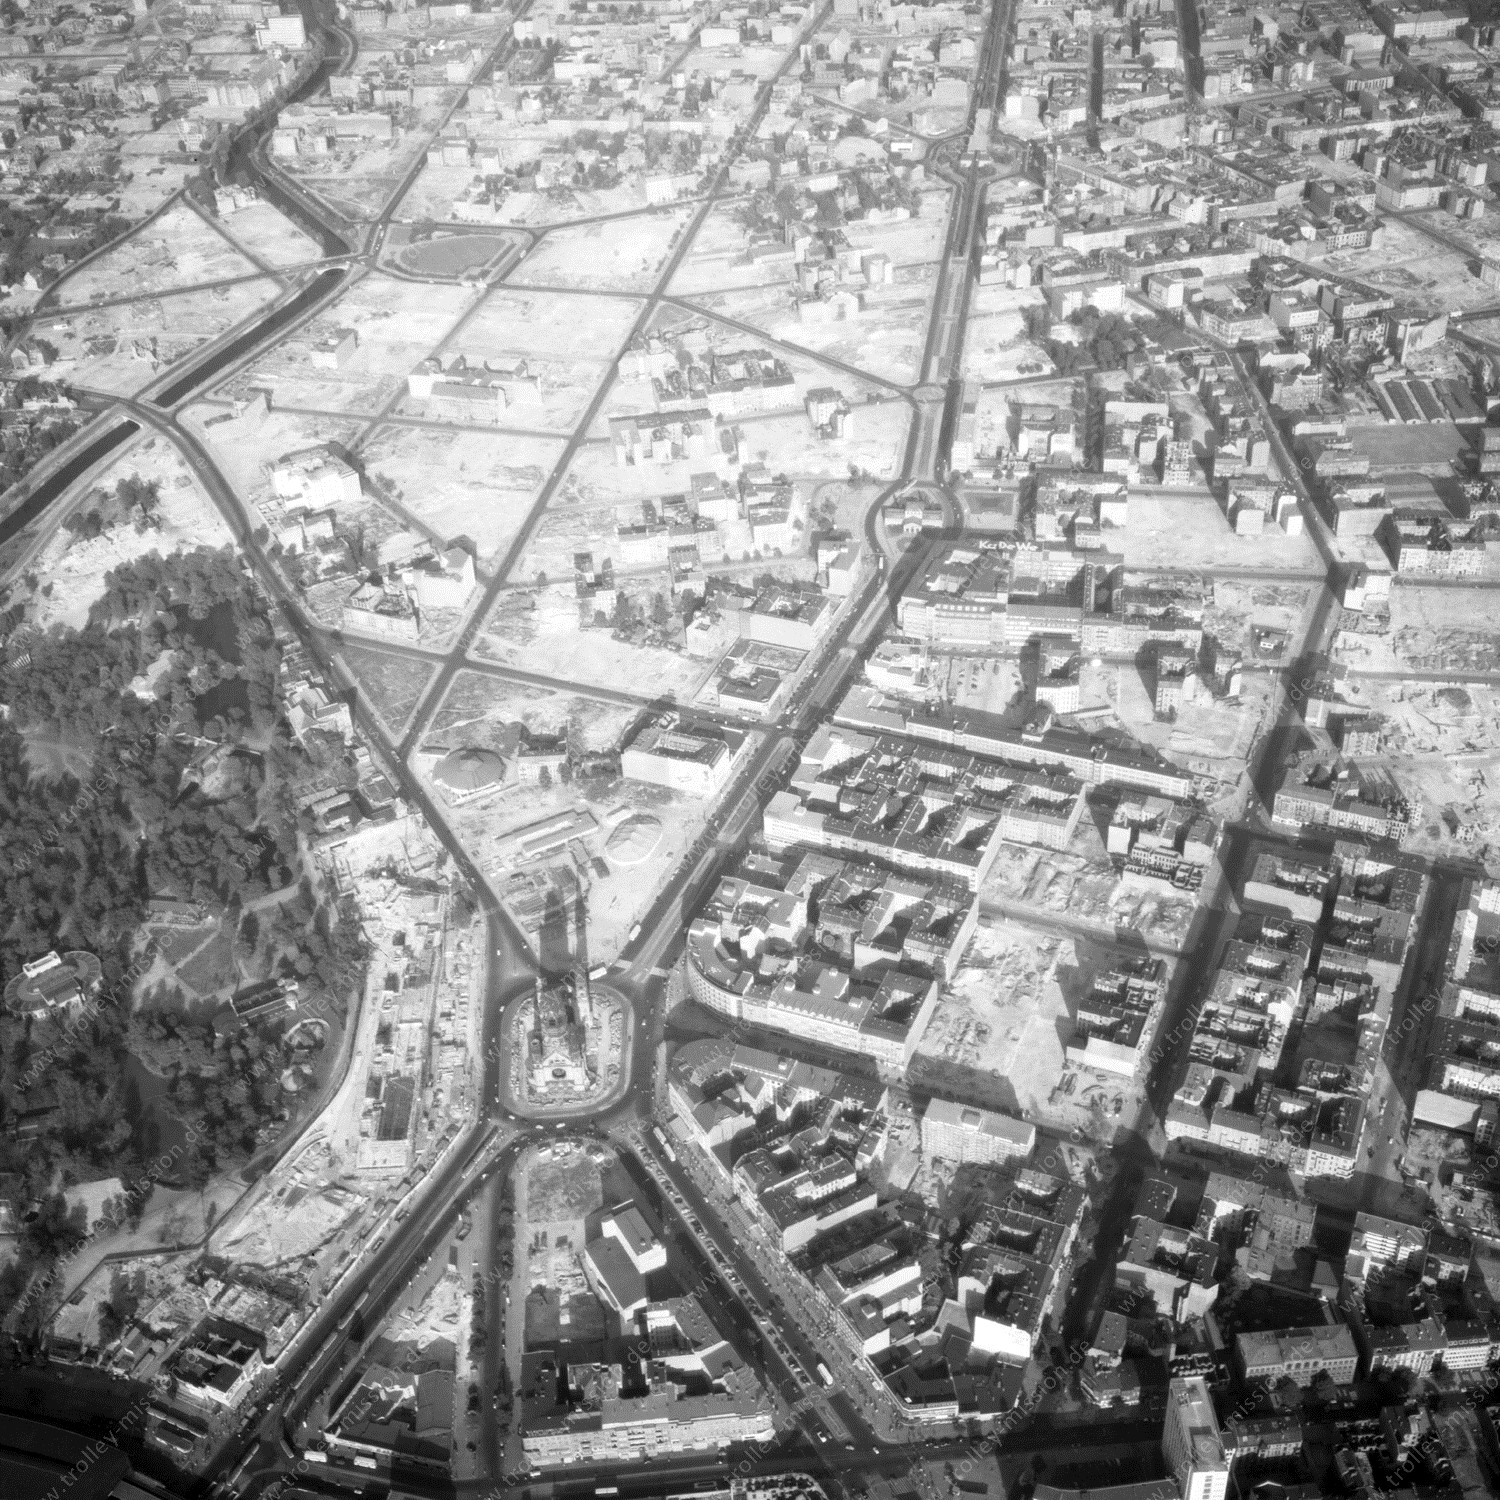 Alte Fotos und Luftbilder von Berlin - Luftbildaufnahme Nr. 12 - Historische Luftaufnahmen von West-Berlin aus dem Jahr 1954 - Flugstrecke Echo